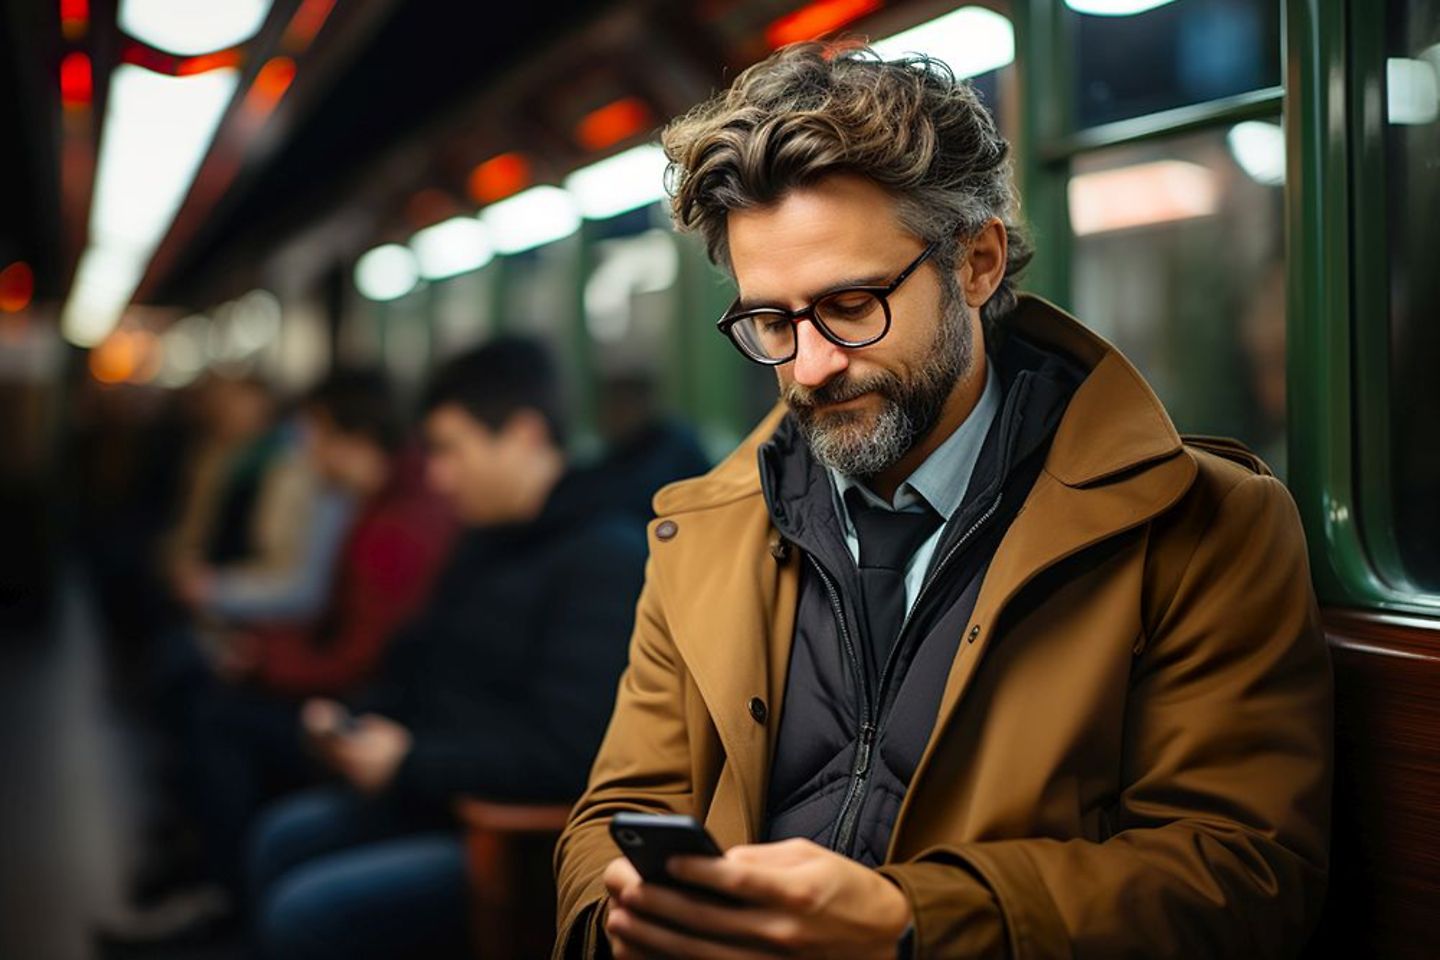 Mann mit Brille surft im Internet in einem Zug